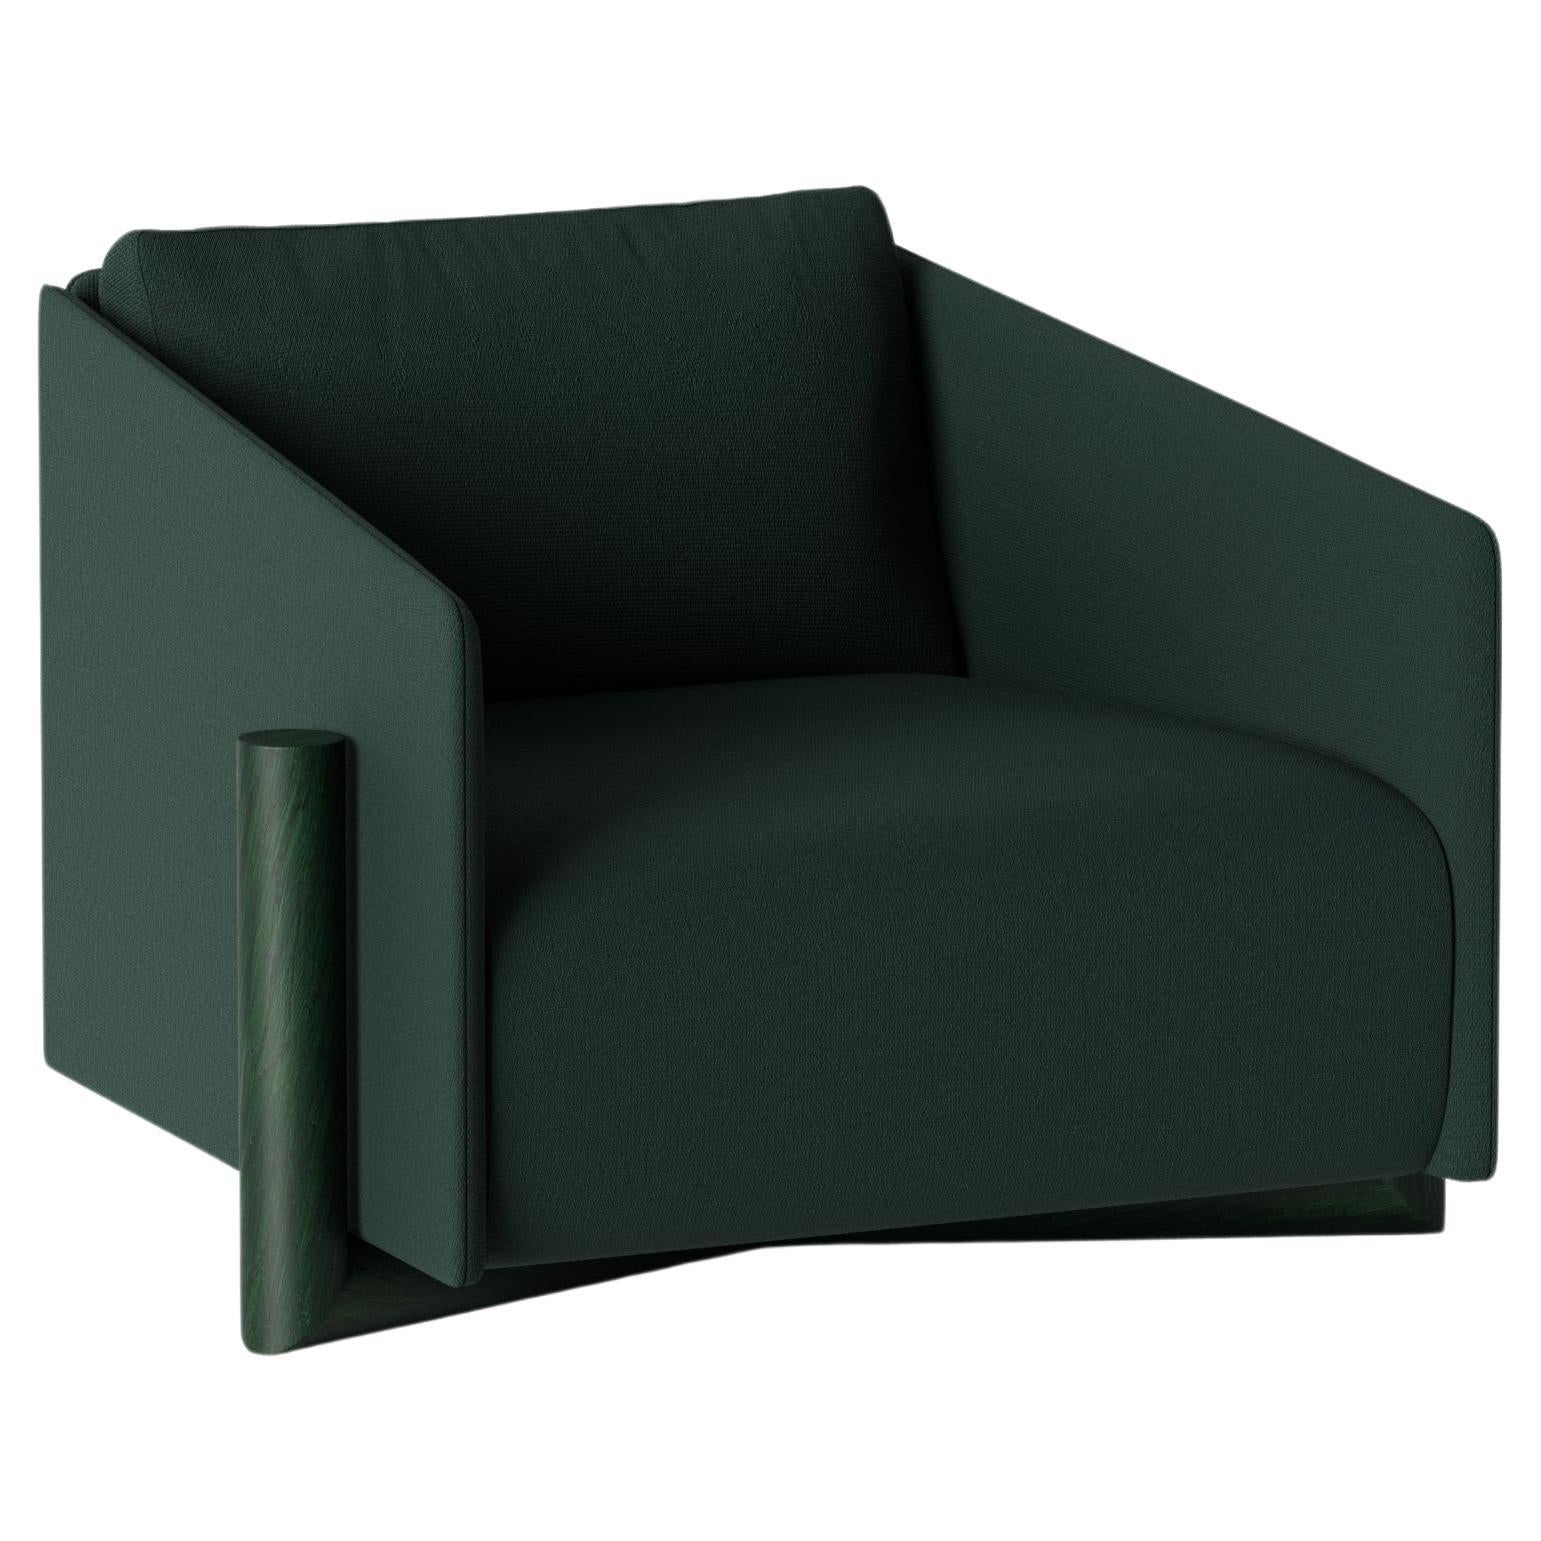 Green Timber Armchair by Kann Design